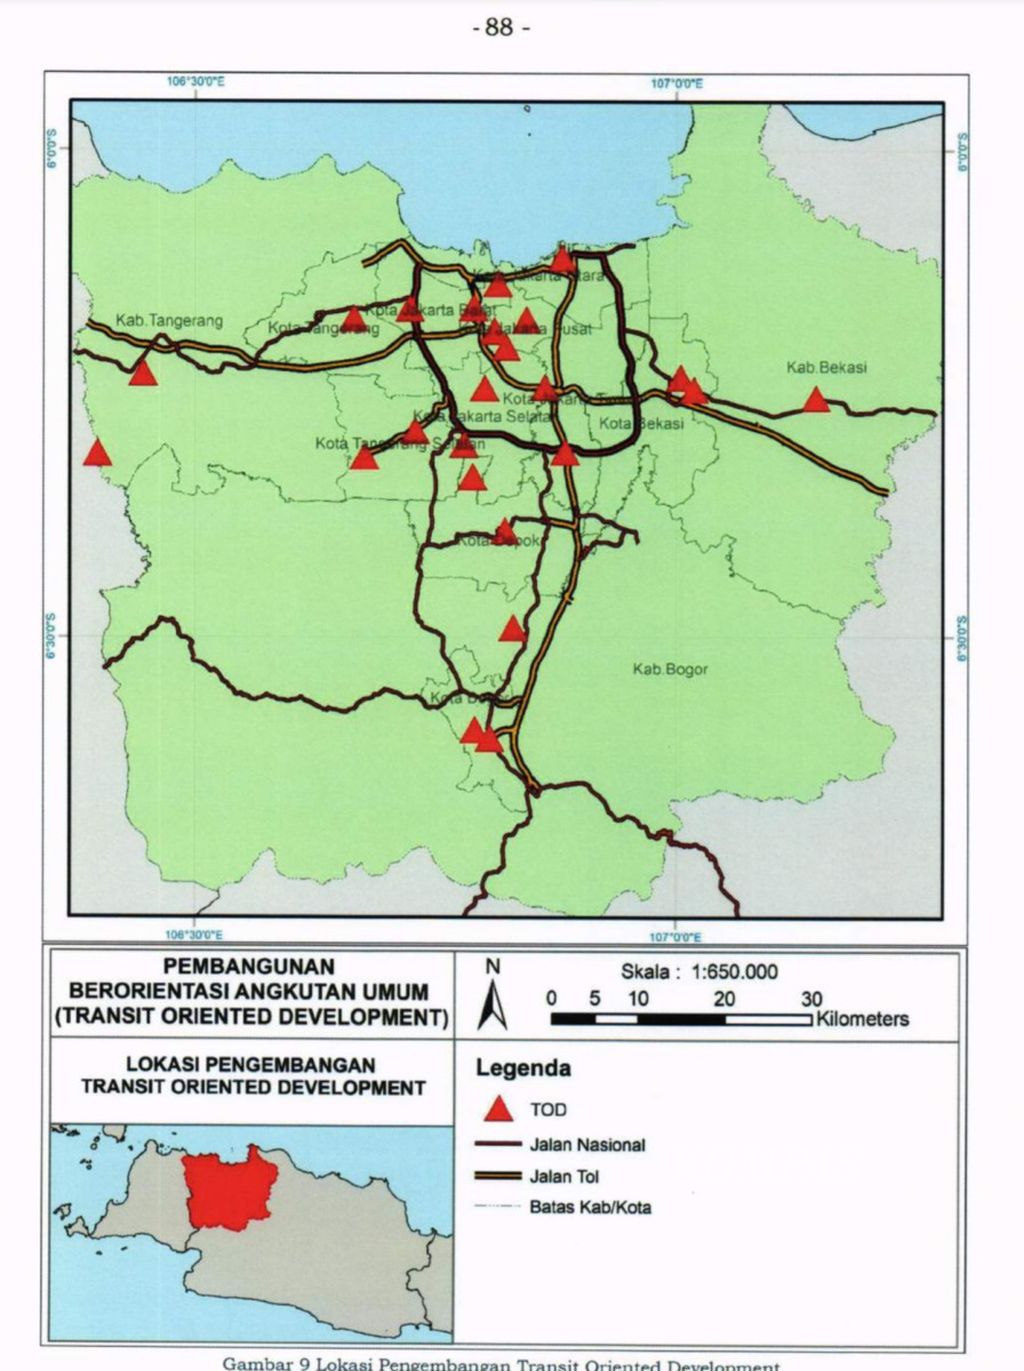 Lokasi pengembangan TOD di Jabodetabek dalam Peraturan Presiden Nomor 55 Tahun 2018 tentang Rencana Induk Transportasi Jabodetabek 2018-2029.